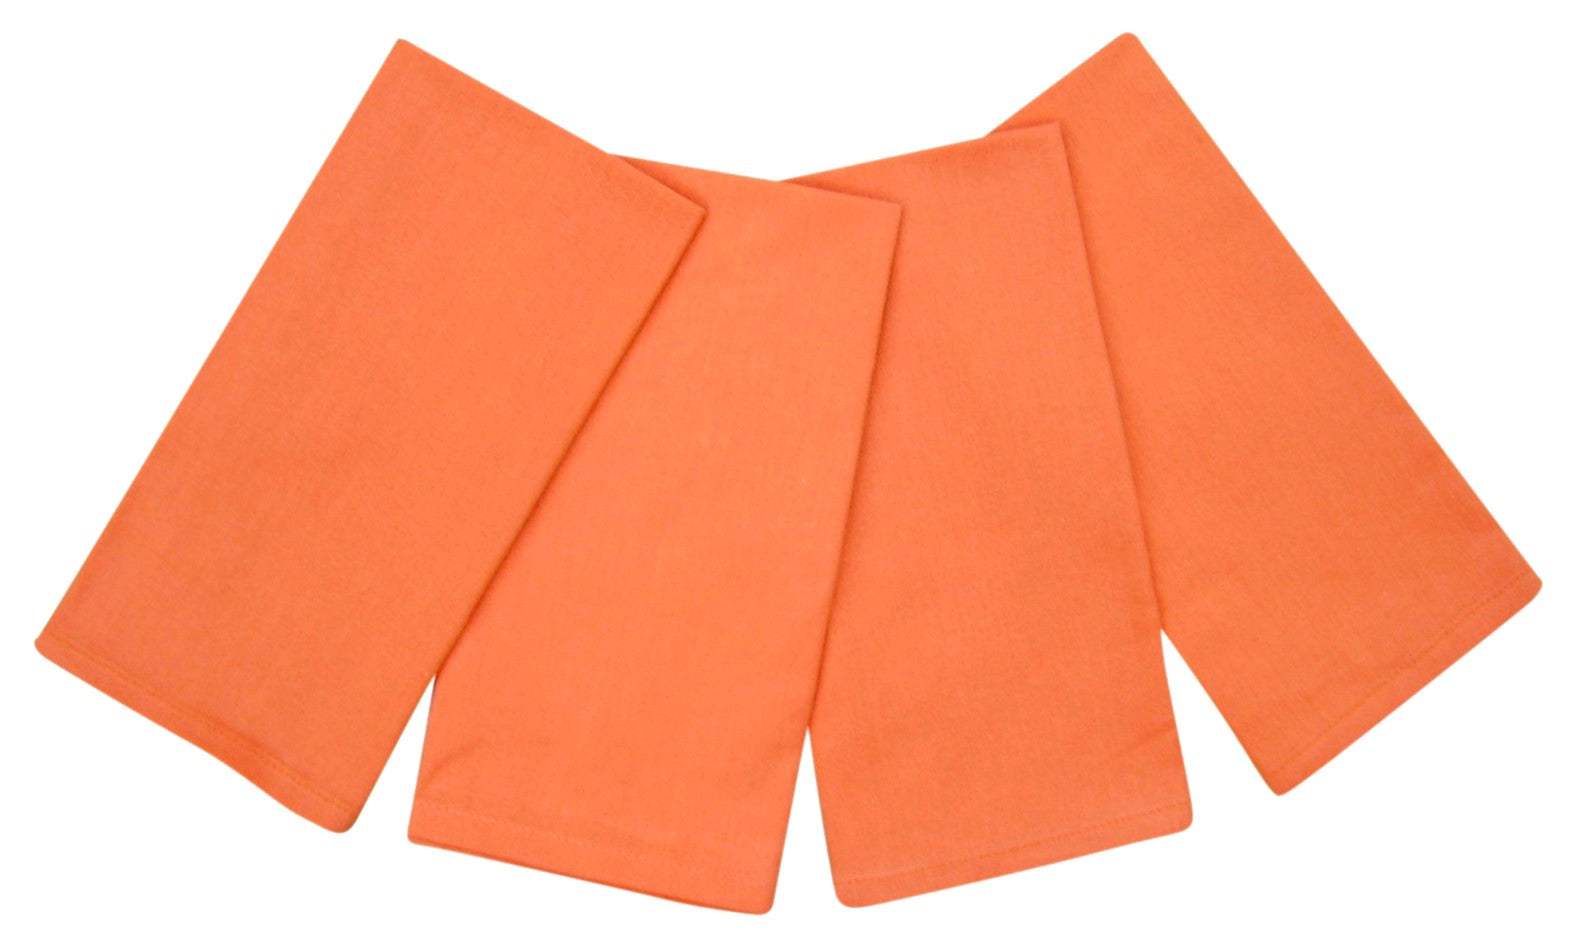 100% 棉餐巾 20" x 20" 4 件套 橙色